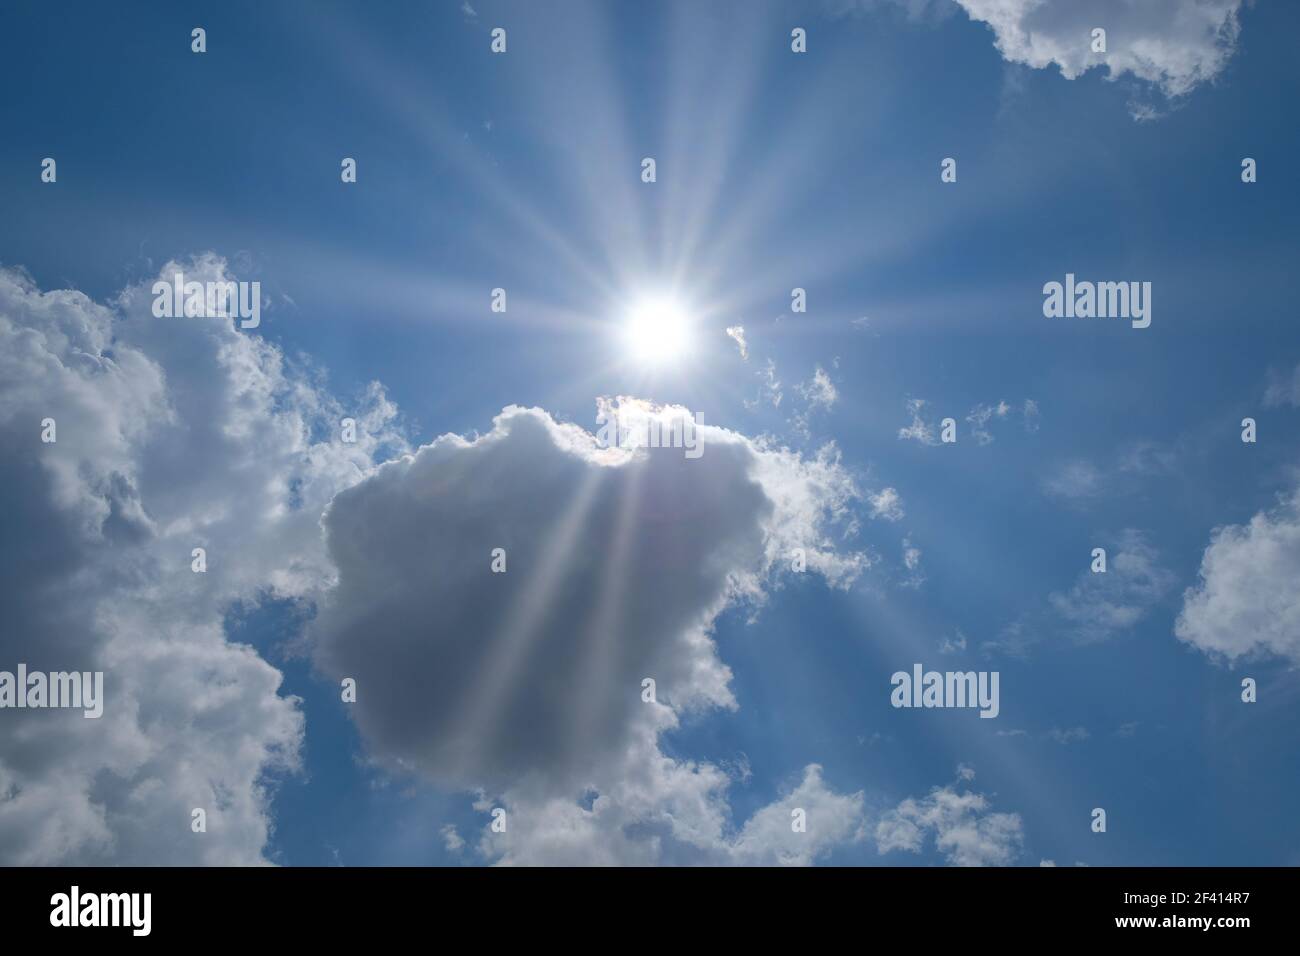 Himmel mit Wolken und Sonnenstrahlen mit Platz für Ihren Text, Copyspace. Himmel mit Wolken und Sonne Platz für Ihren Text Stockfoto